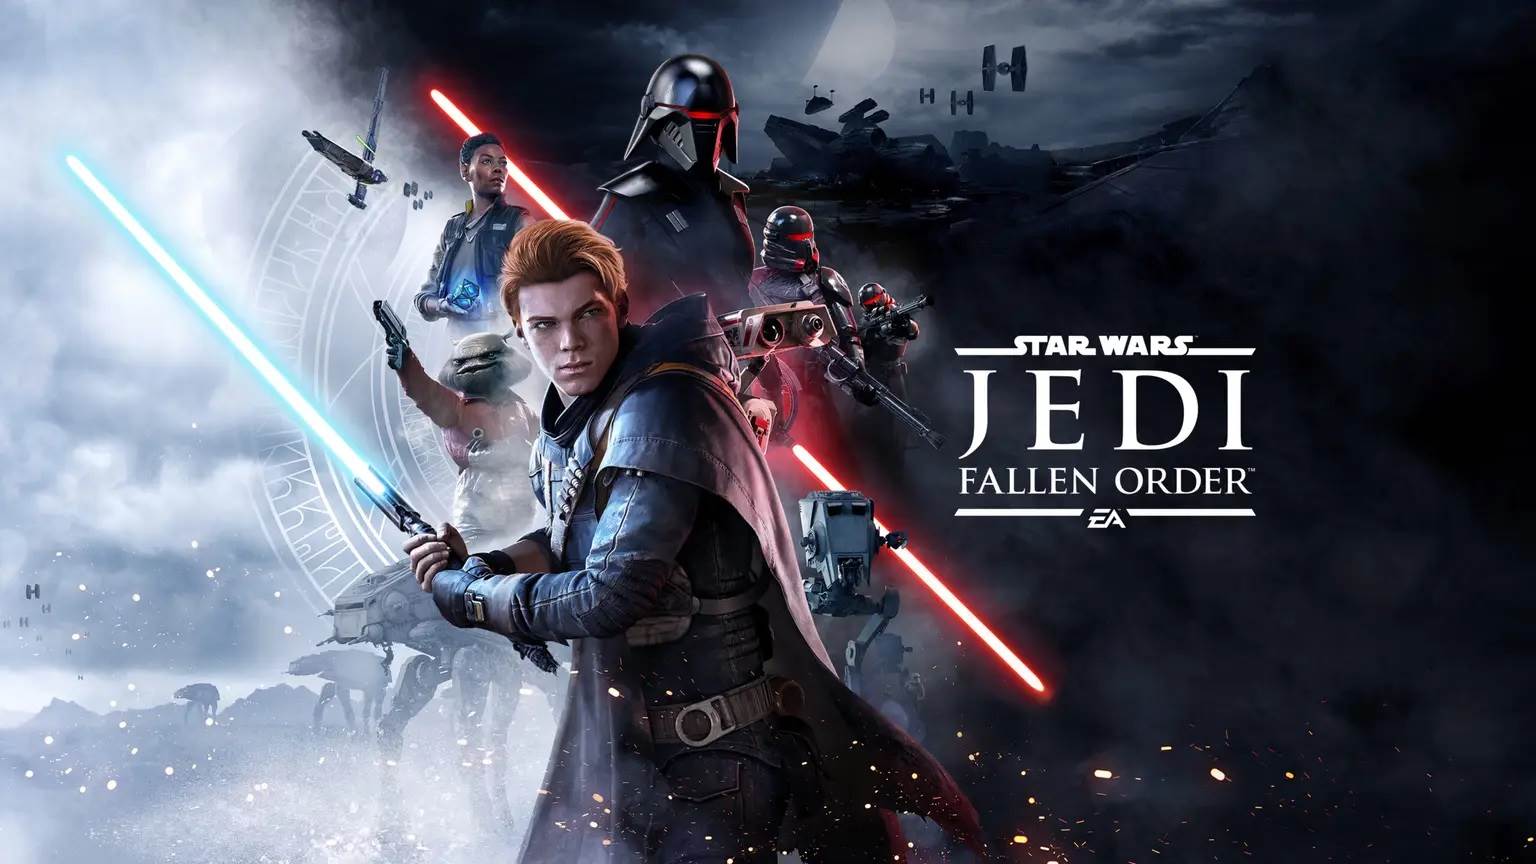  Star Wars Jedi Fallen Order.jpg 